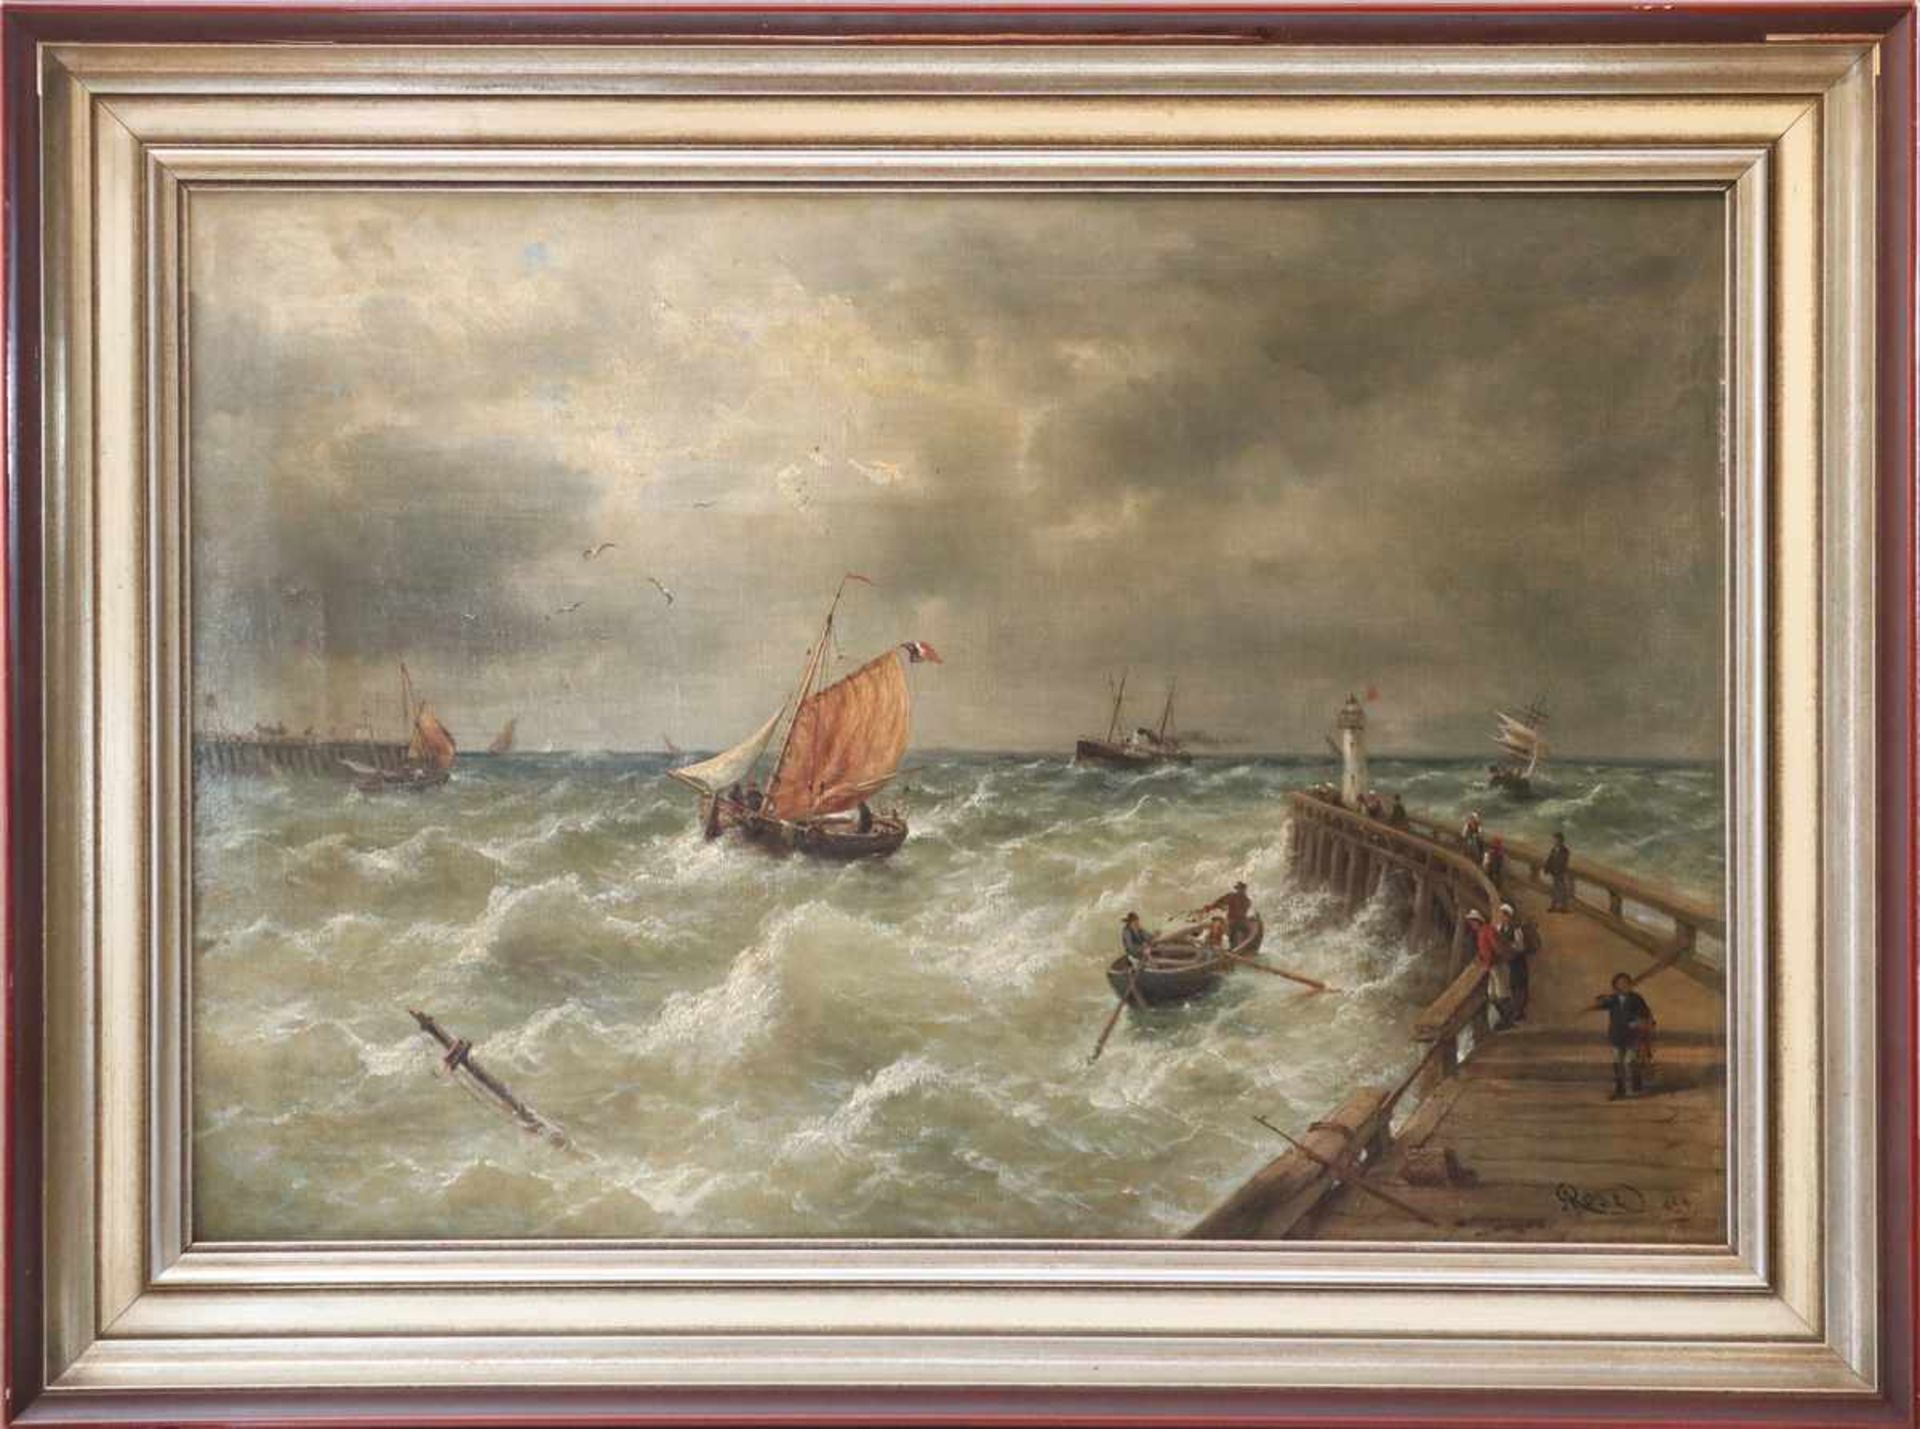 KARL JULIUS ROSE (1828 bei Dresden-1911 München) Öl auf Leinwand, ¨Fischerboote an stürmischer